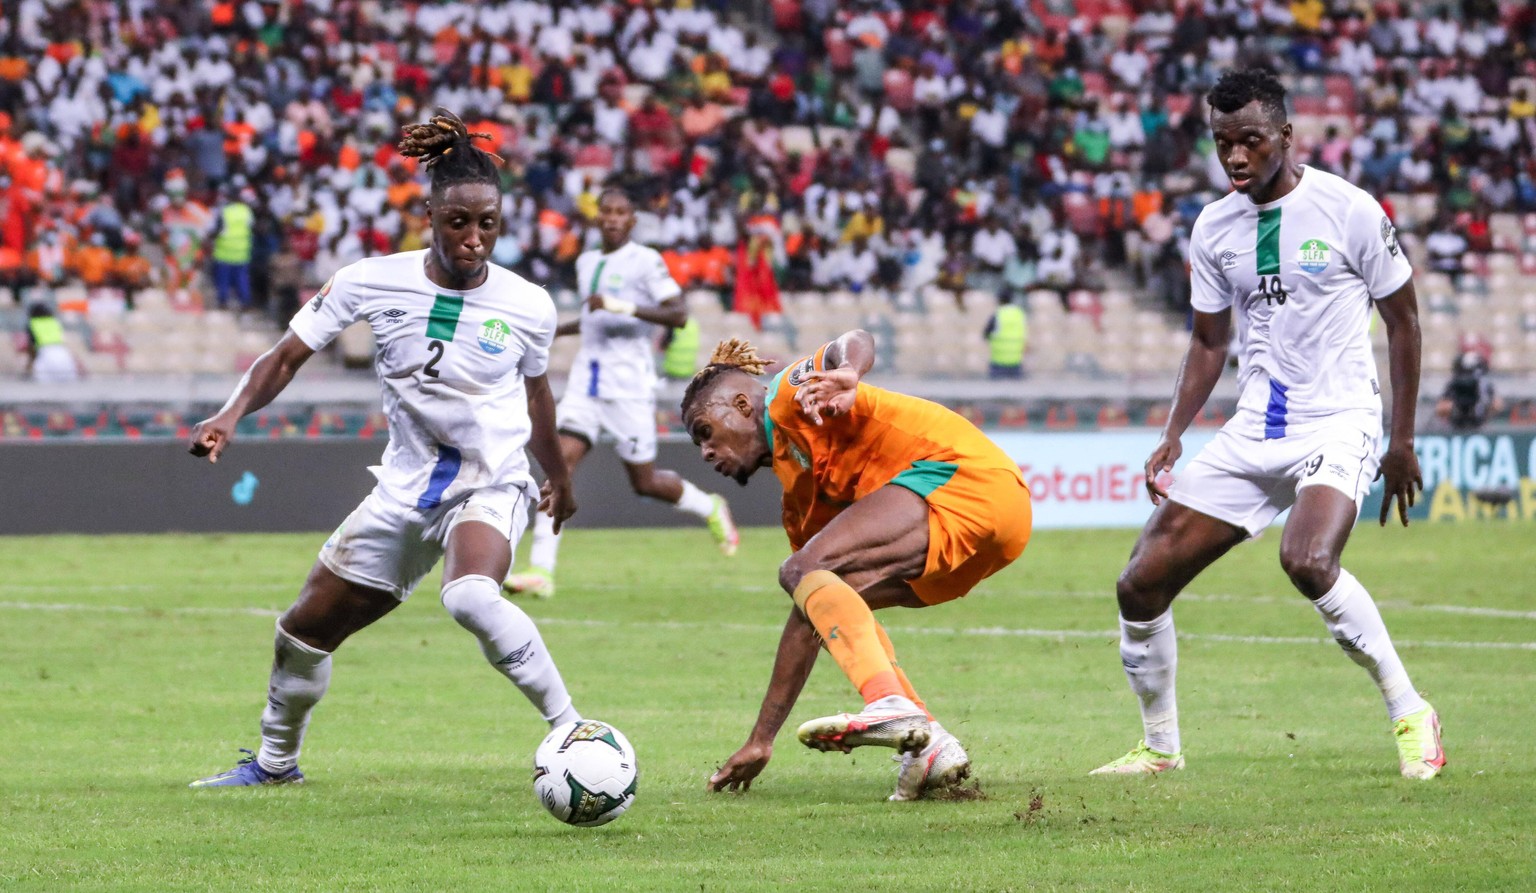 Sierra Leone gelang gegen die Elfenbeinküste eine Überraschung – dank eines Defensiv-Aussetzers in letzter Minute.